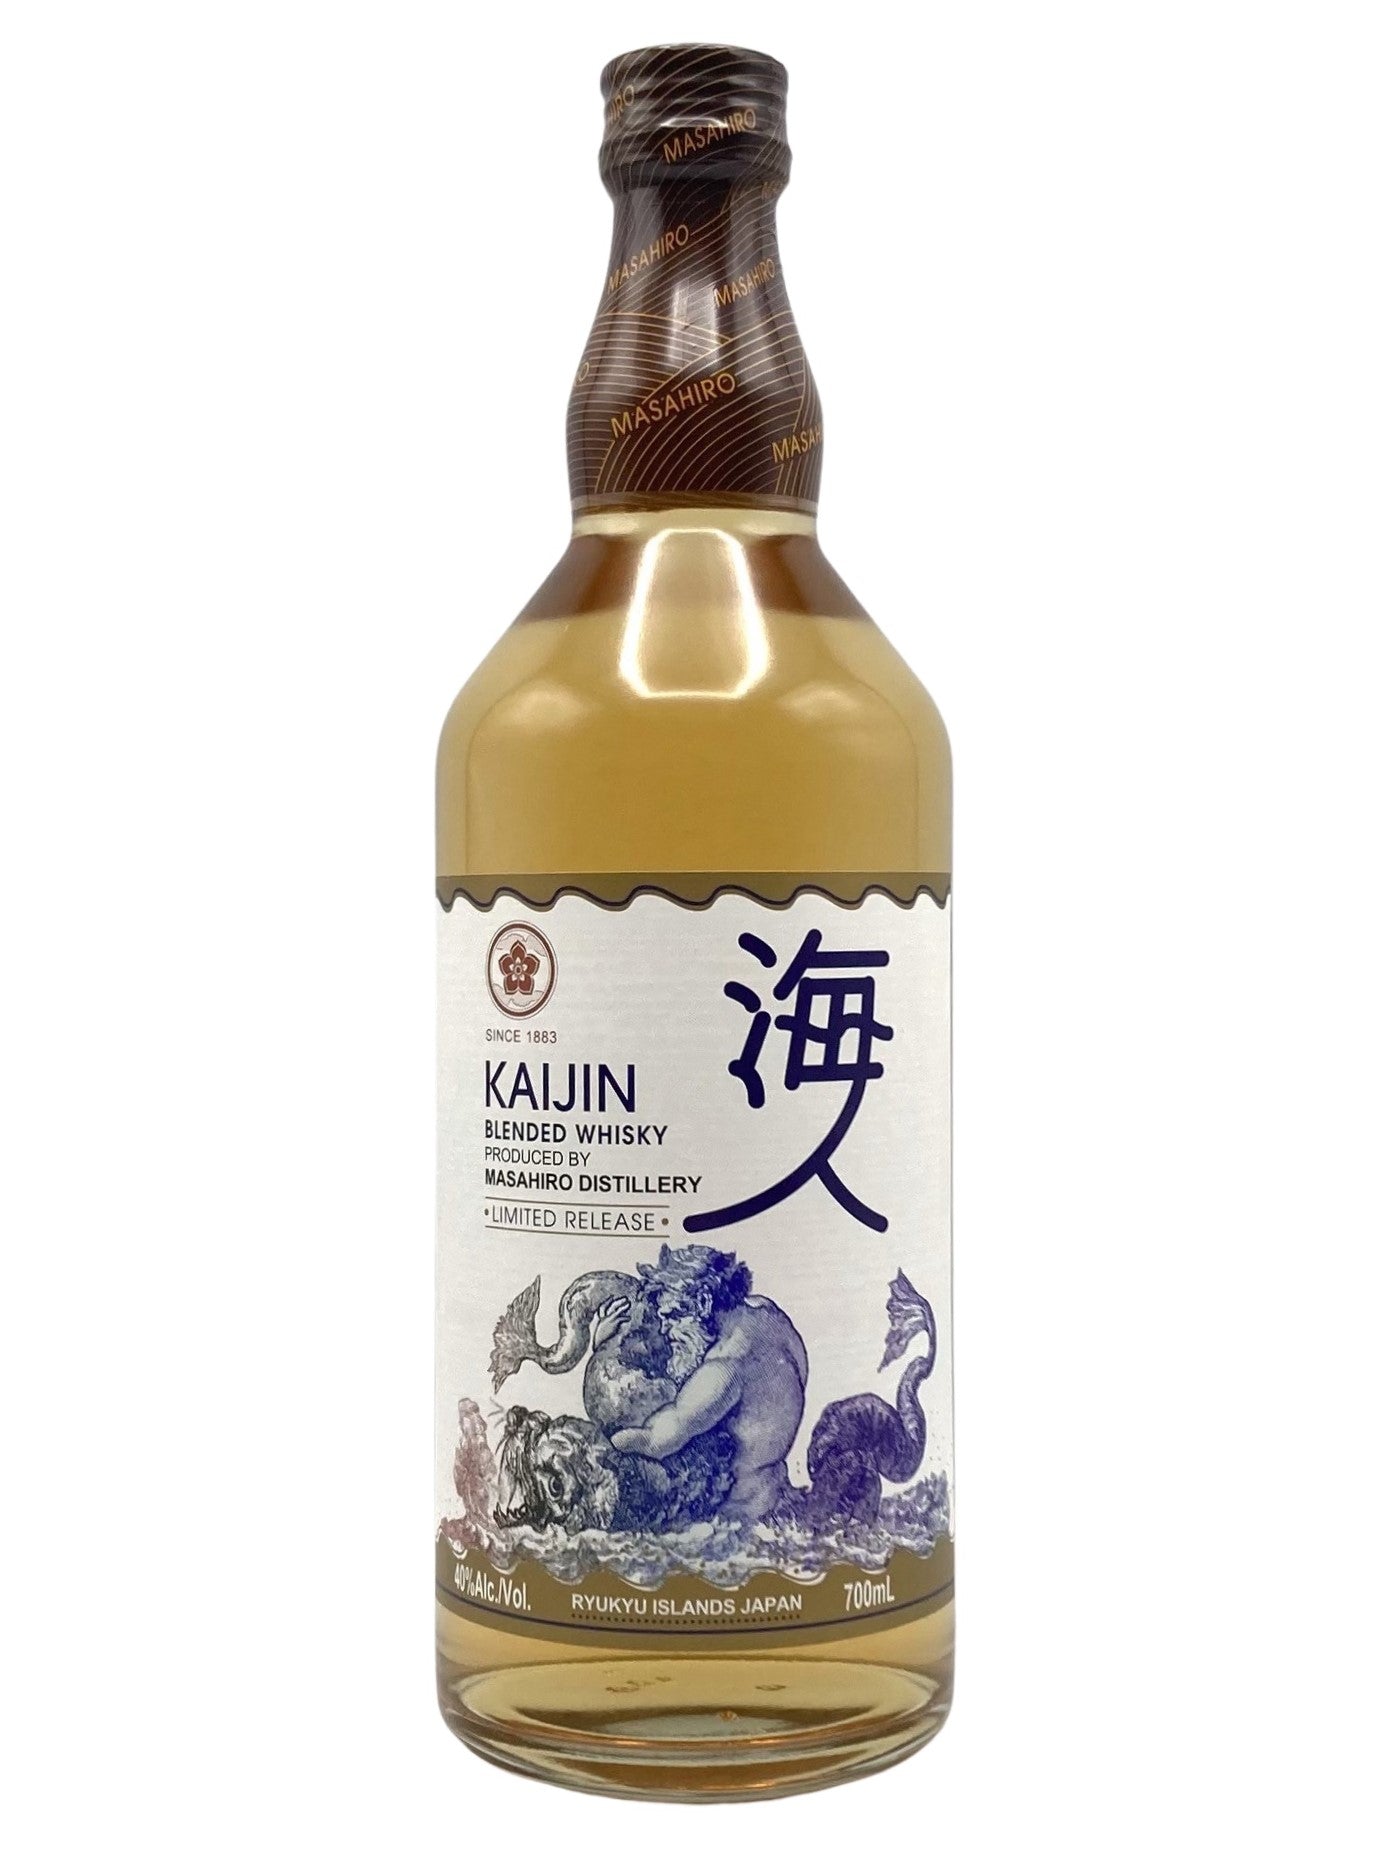 Masahiro Kaijin Blended Whisky